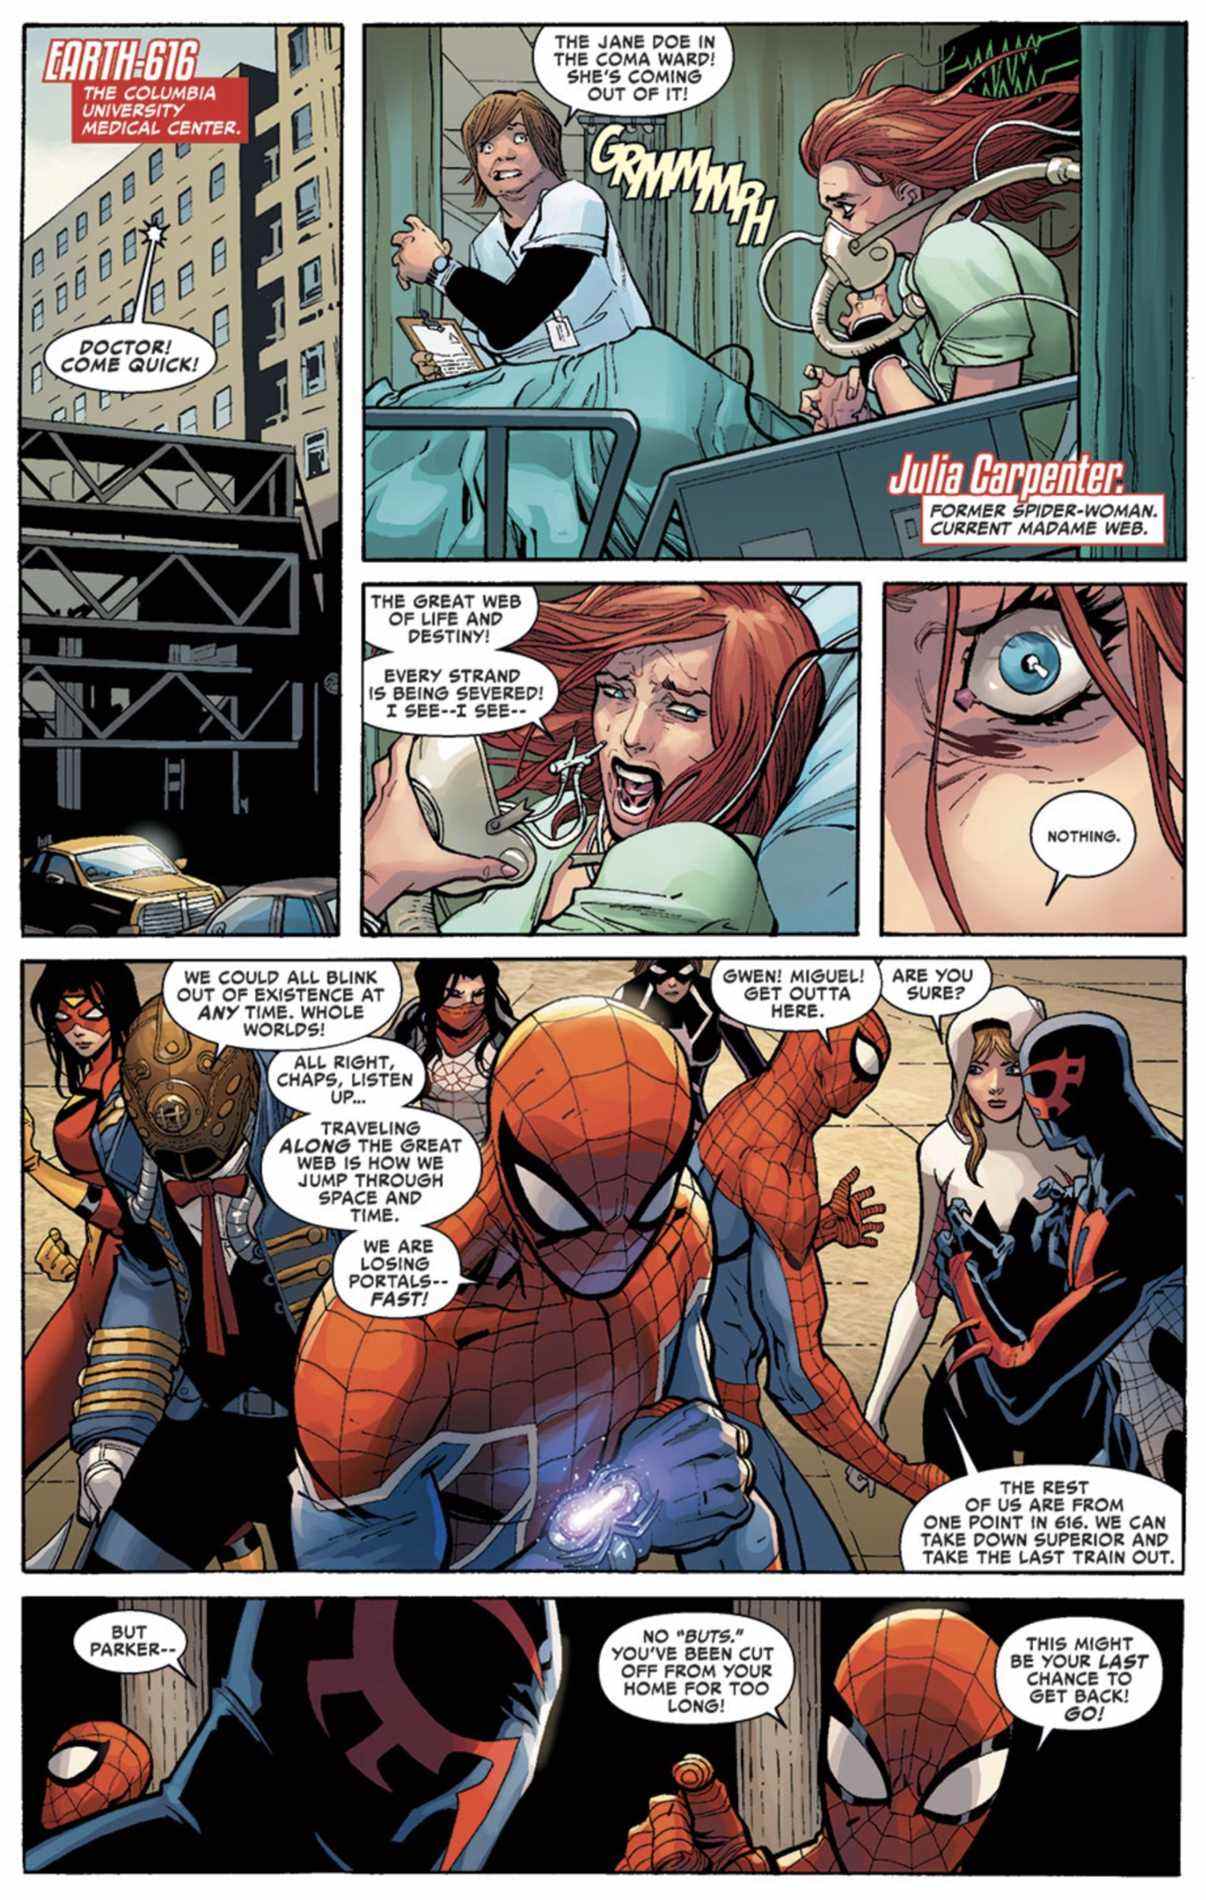 Incroyable page de Spider-Man #15